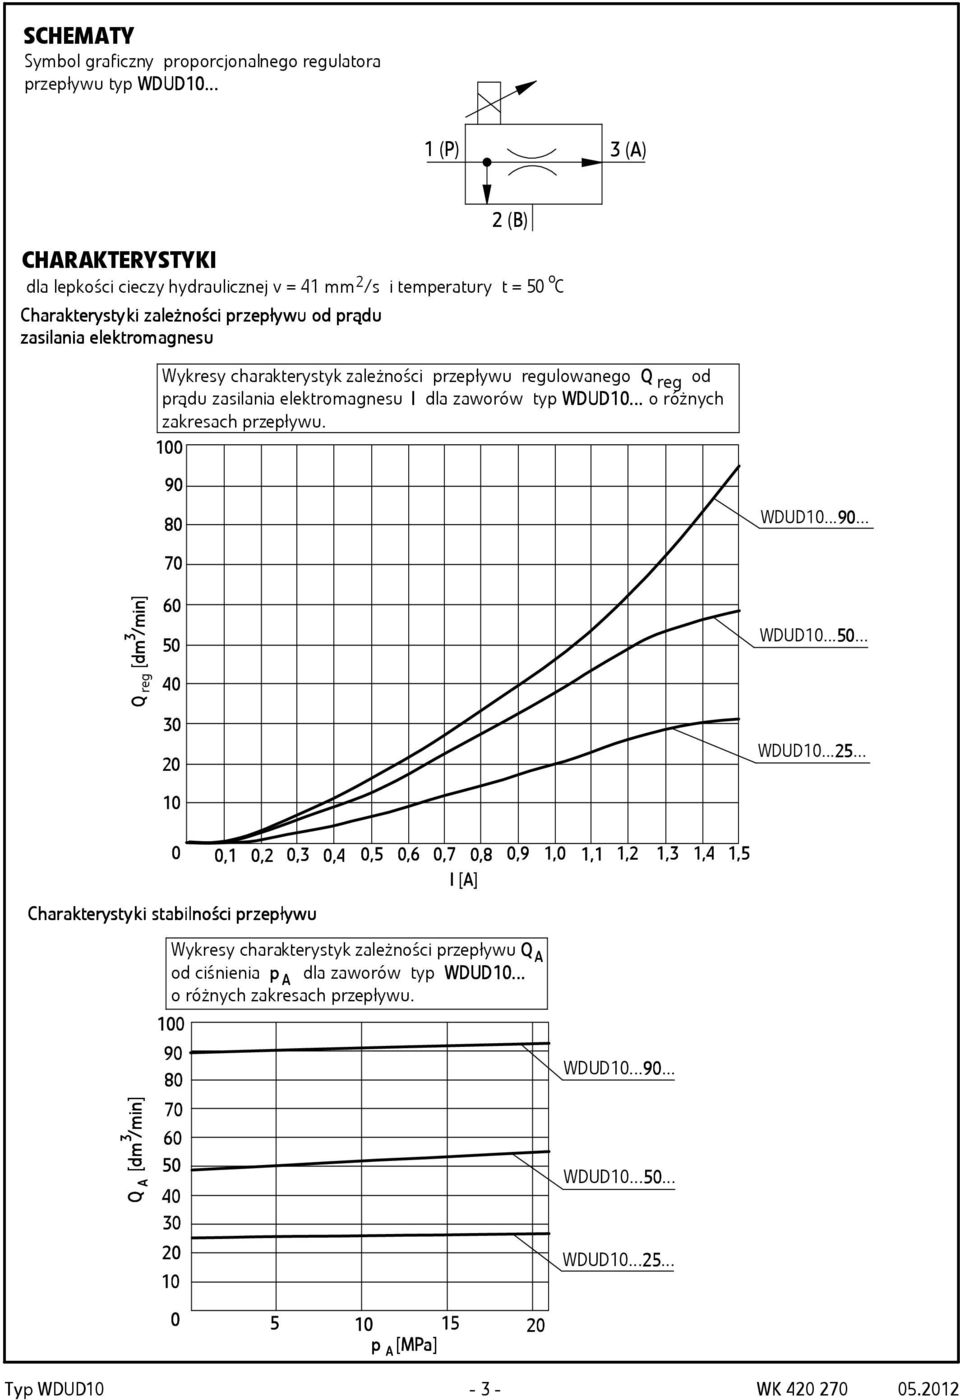 tromag agne nesu 2 (B) Wykresy charakterystyk zależności przepływu regulowanego Q reg od prądu zasilania elektromagnesu I dla zaworów typ WDUD UD10... o różnych zakresach przepływu. 100 90 80 WDUD10.